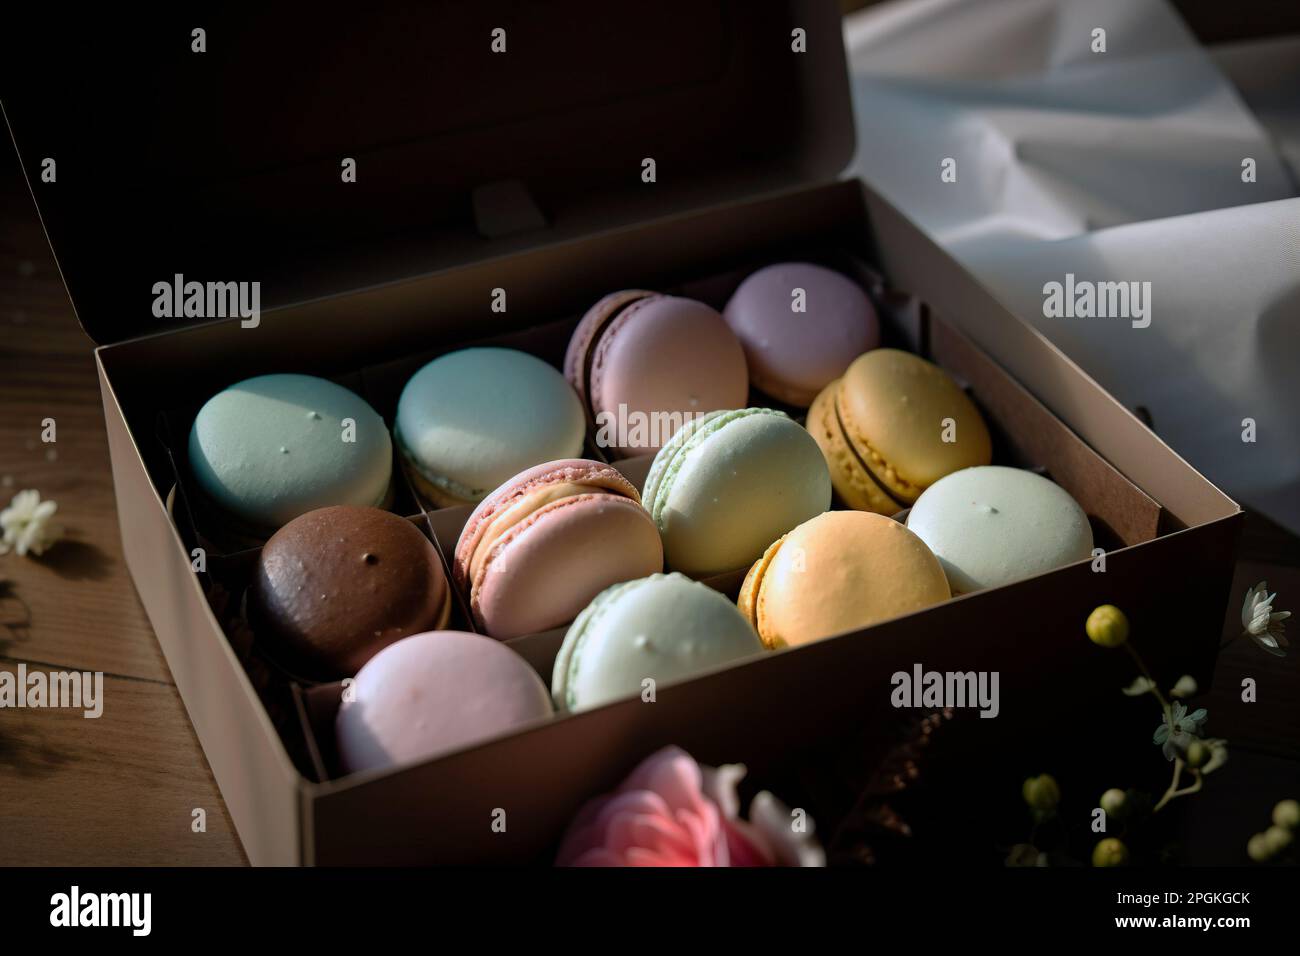 photo de l'élégante boîte de macarons pour cadeaux Banque D'Images